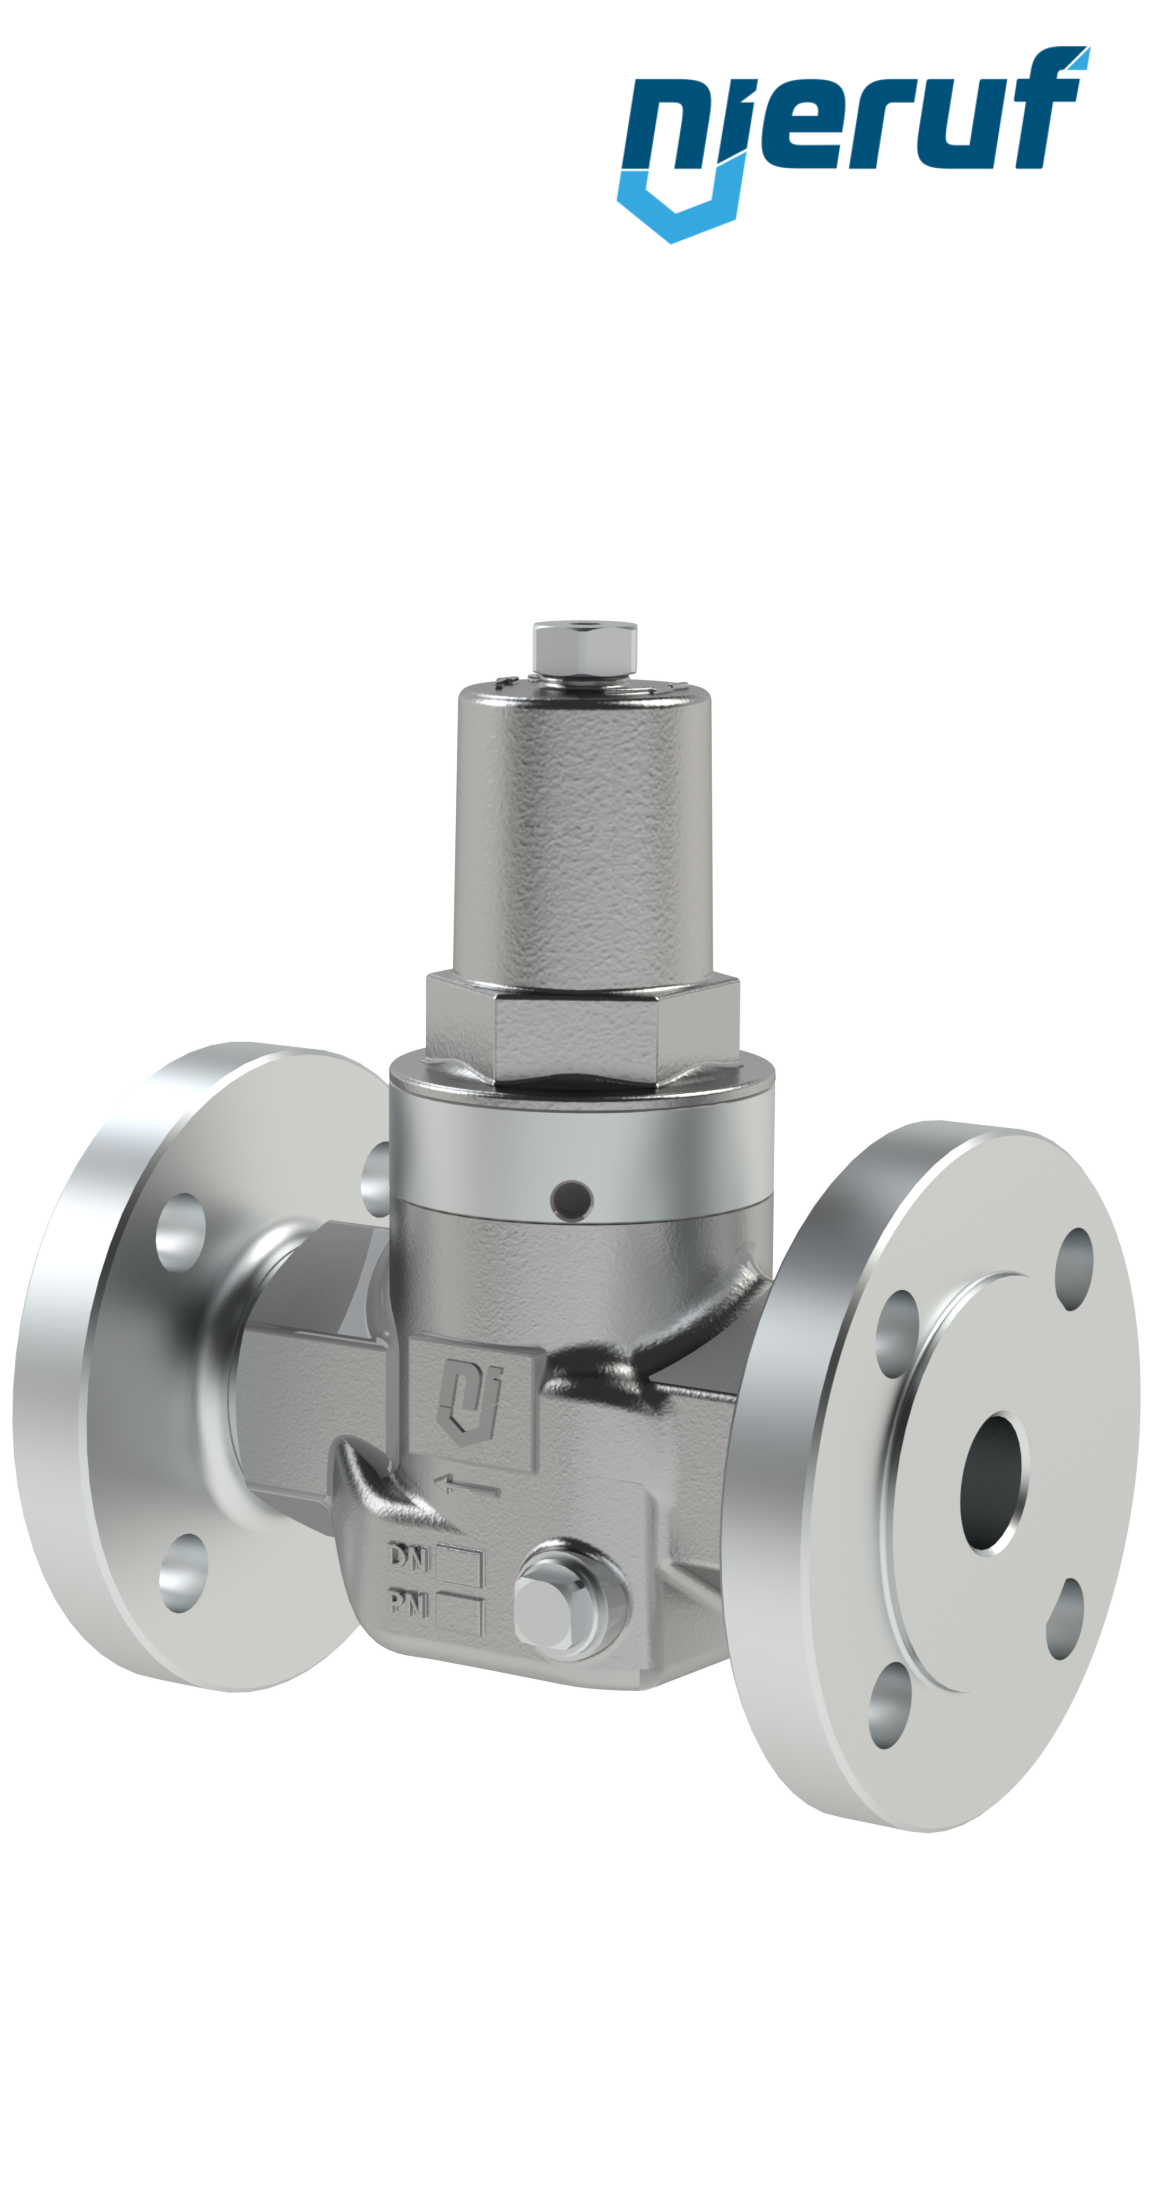 Piston-pressure reducing valve DN15 DM11 flange ANSI 150 stainless steel FPM / FKM 2.0 - 20.0 bar